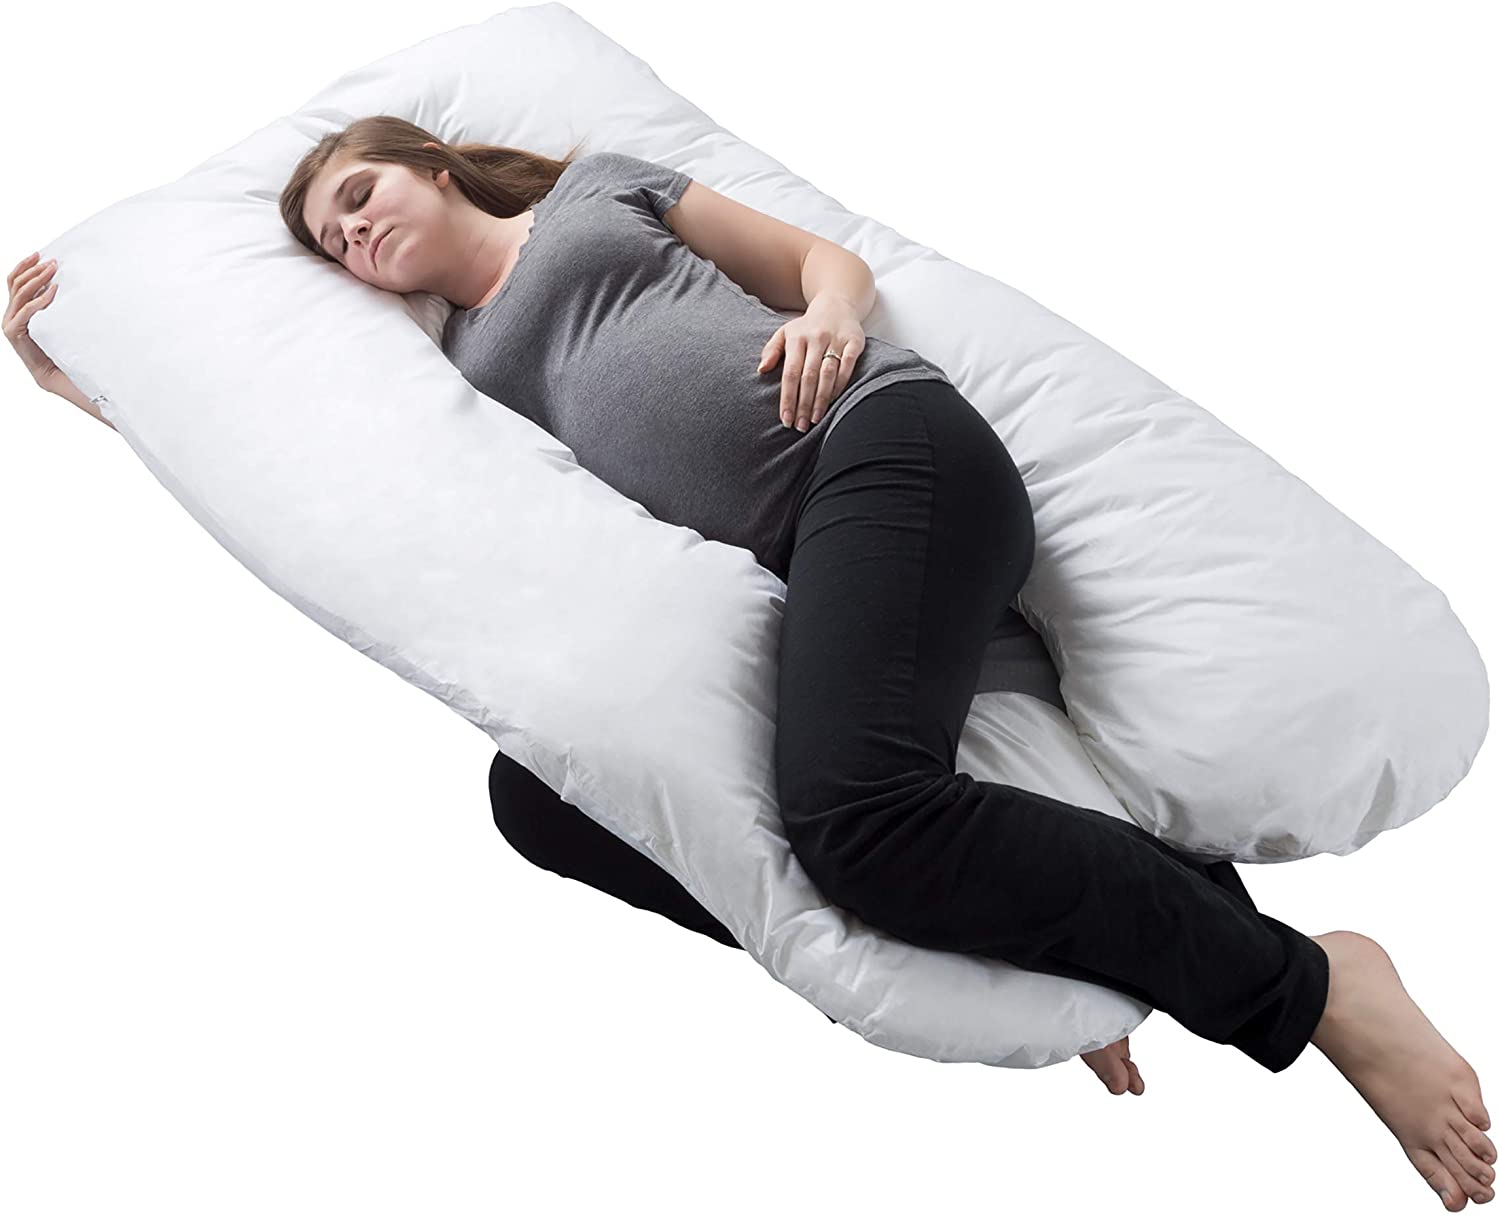 Pillow cuddle | Boyfriend pillow, Arm pillow The Original Girlfriend Pillow B...